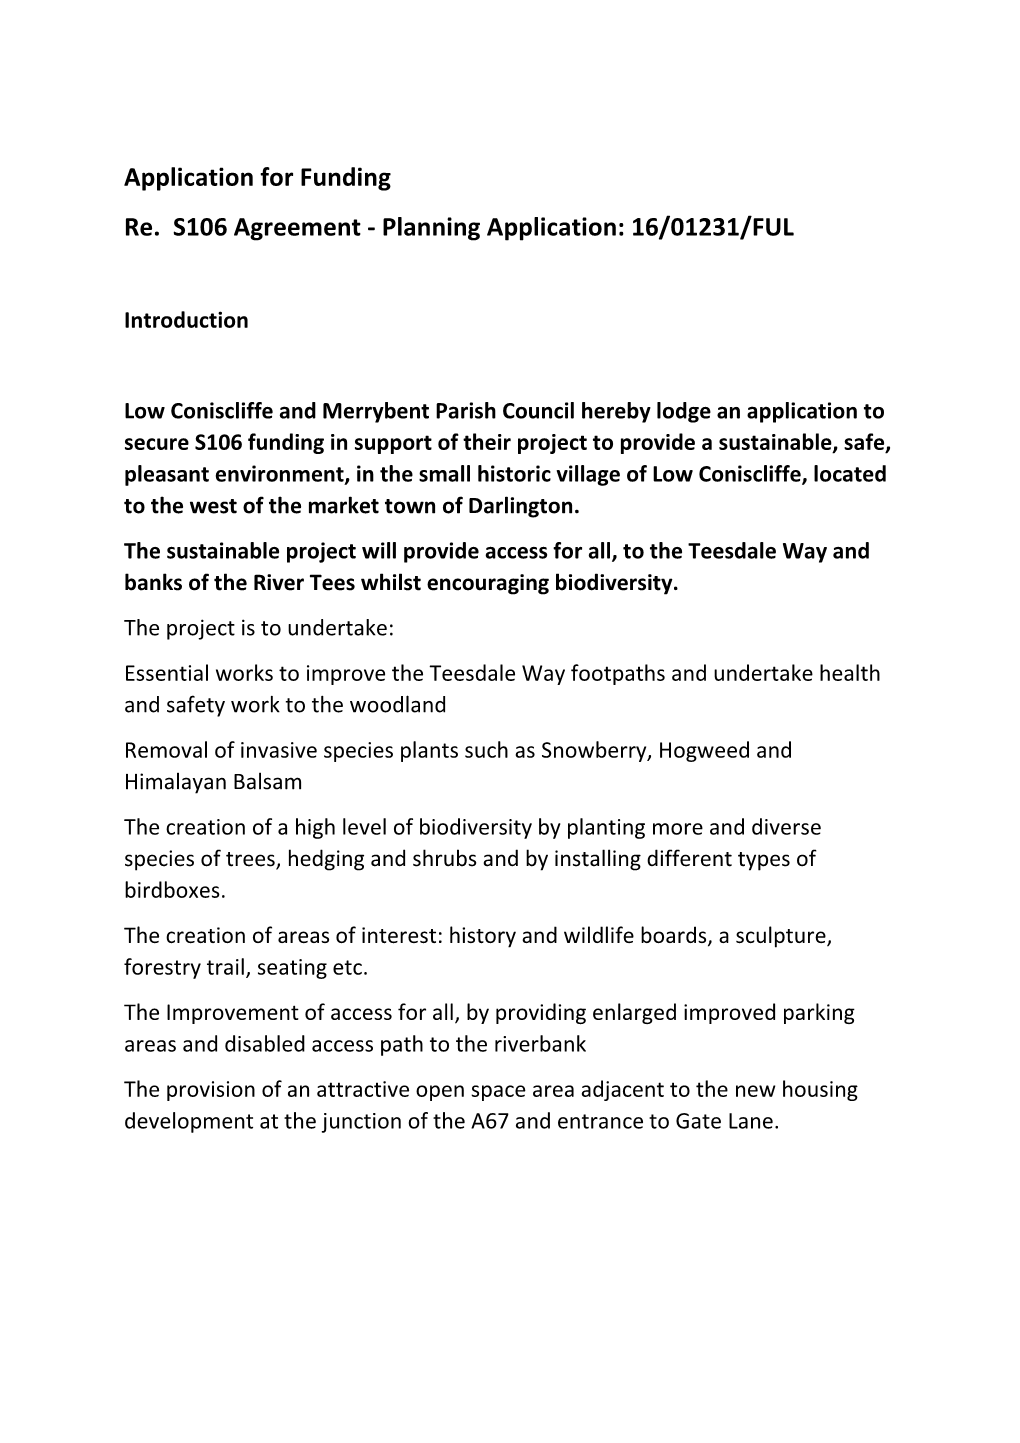 Low Coniscliffe & Merrybent Parish Coucil S106 Application